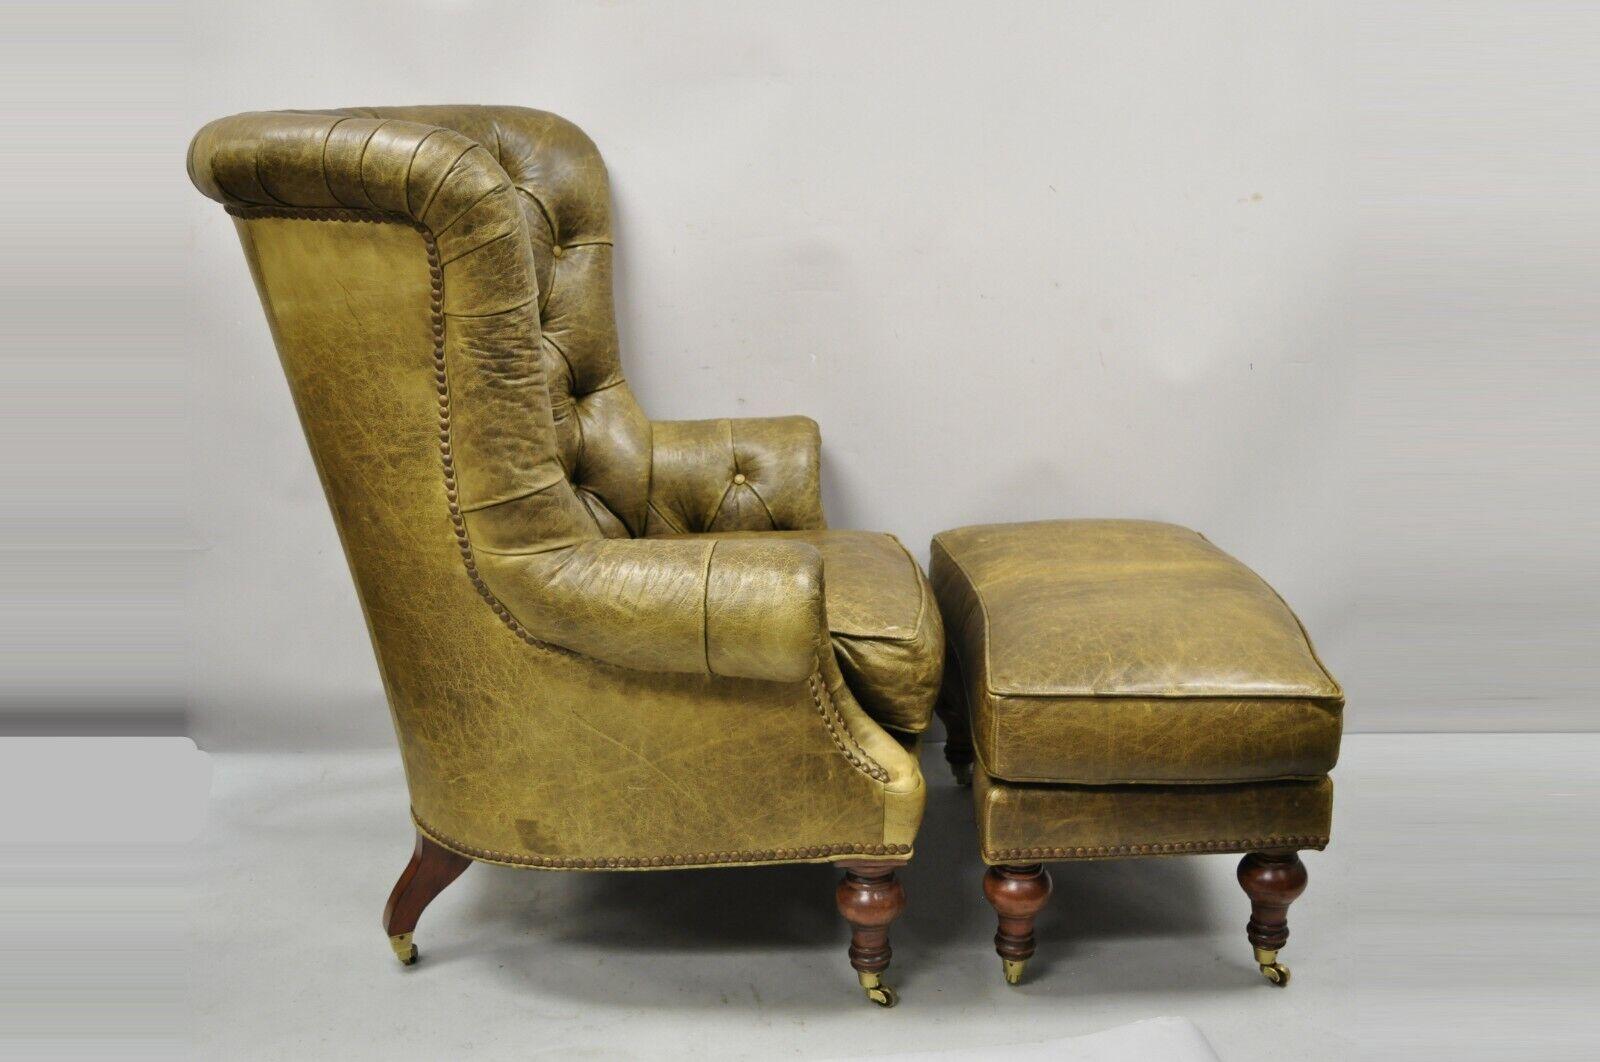 Lilian August große braun grün Leder getuftet Chesterfield Club Lounge Stuhl und Ottomane. Artikel verfügt über einen großen übergroßen Stuhl, passende Ottomane, Messing Rollen, 